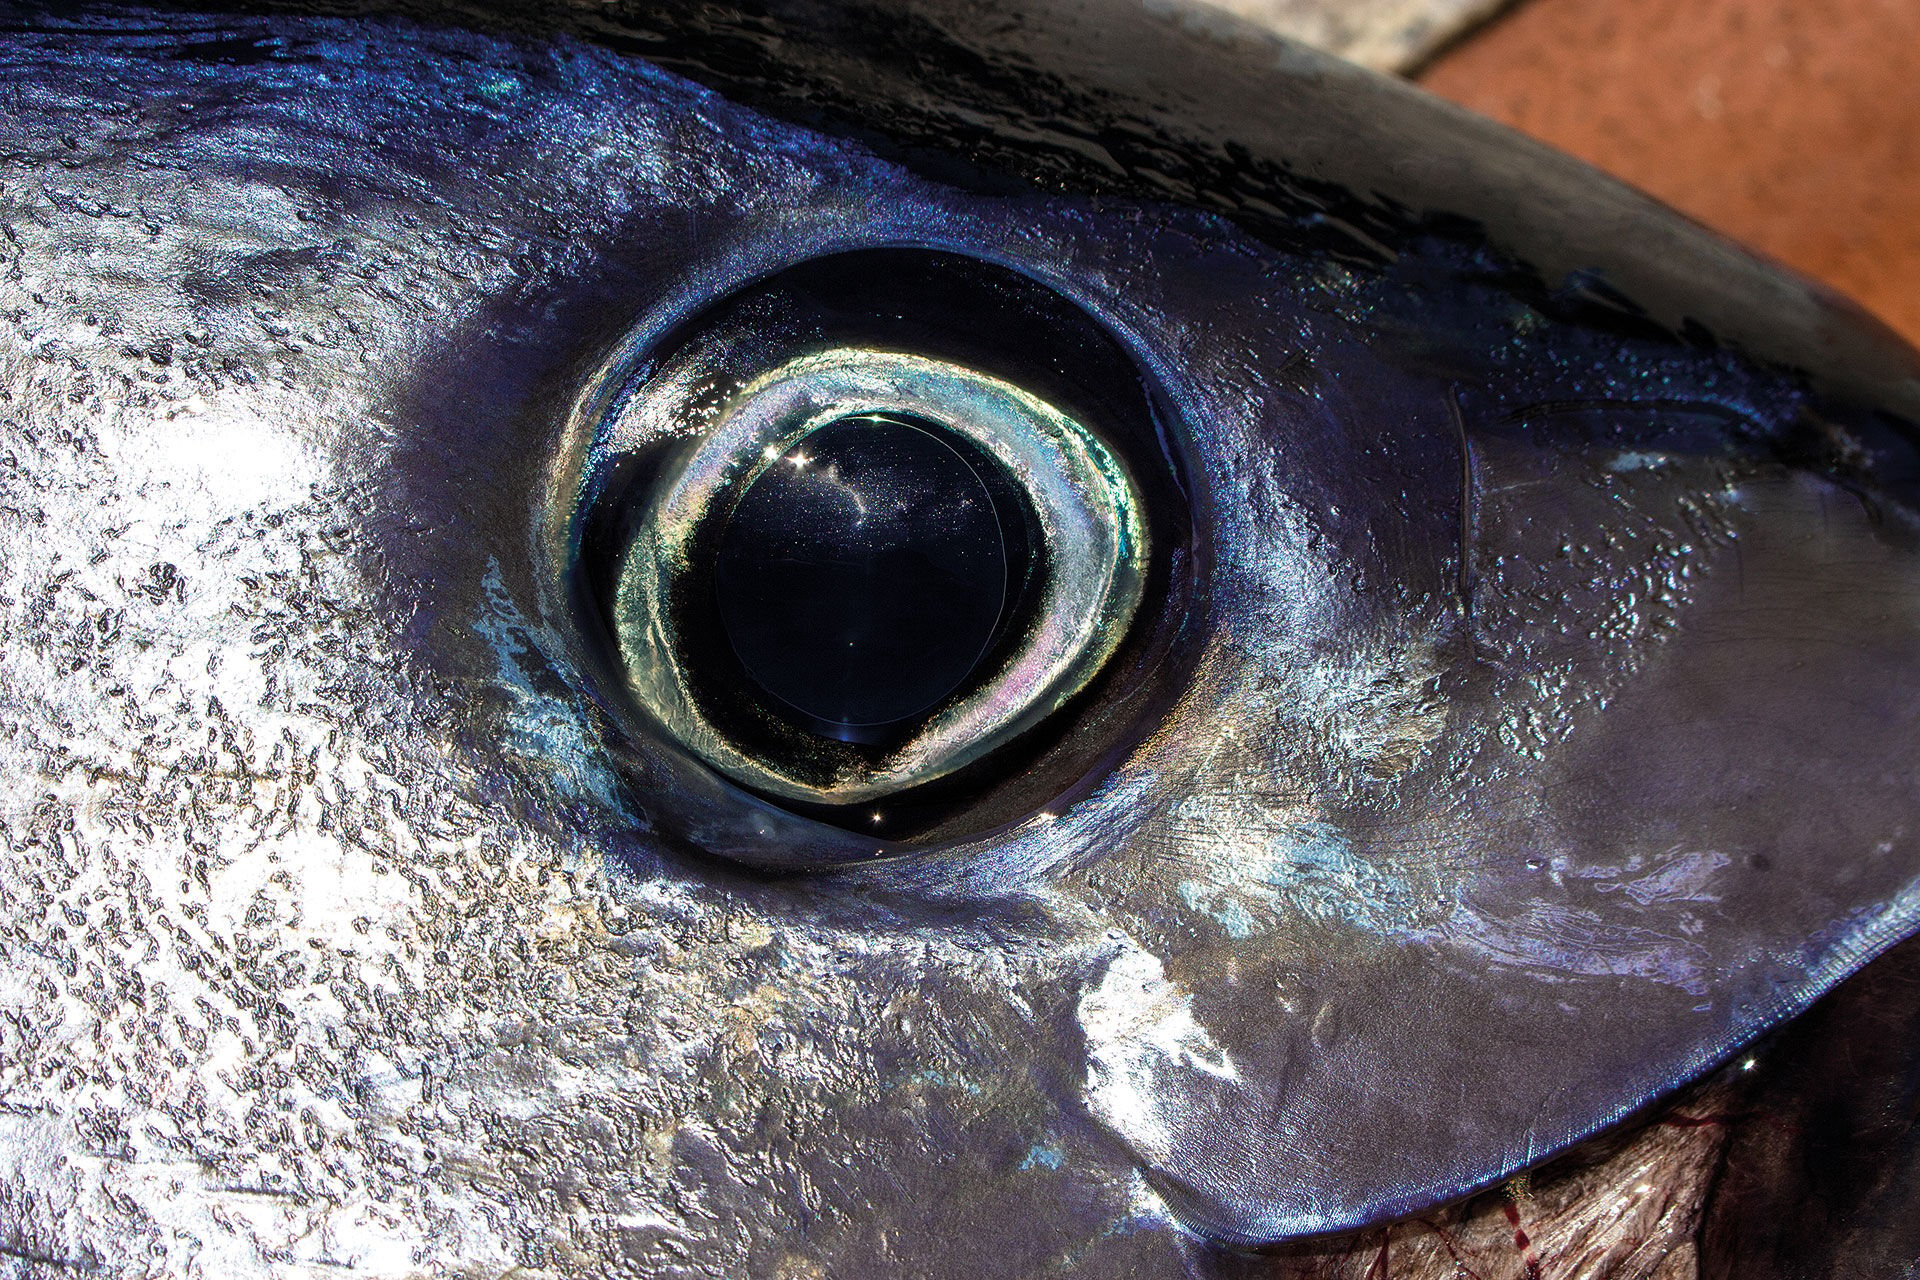  Die auffällig grossen Augen eines Blauflossen-Thunfischs halten, was sie  zu sein scheinen. Eine weitentwickelte Sehkraft im klaren, offenen Meer mit beachtlichen, lichtdurchlässigen Pupillen.  